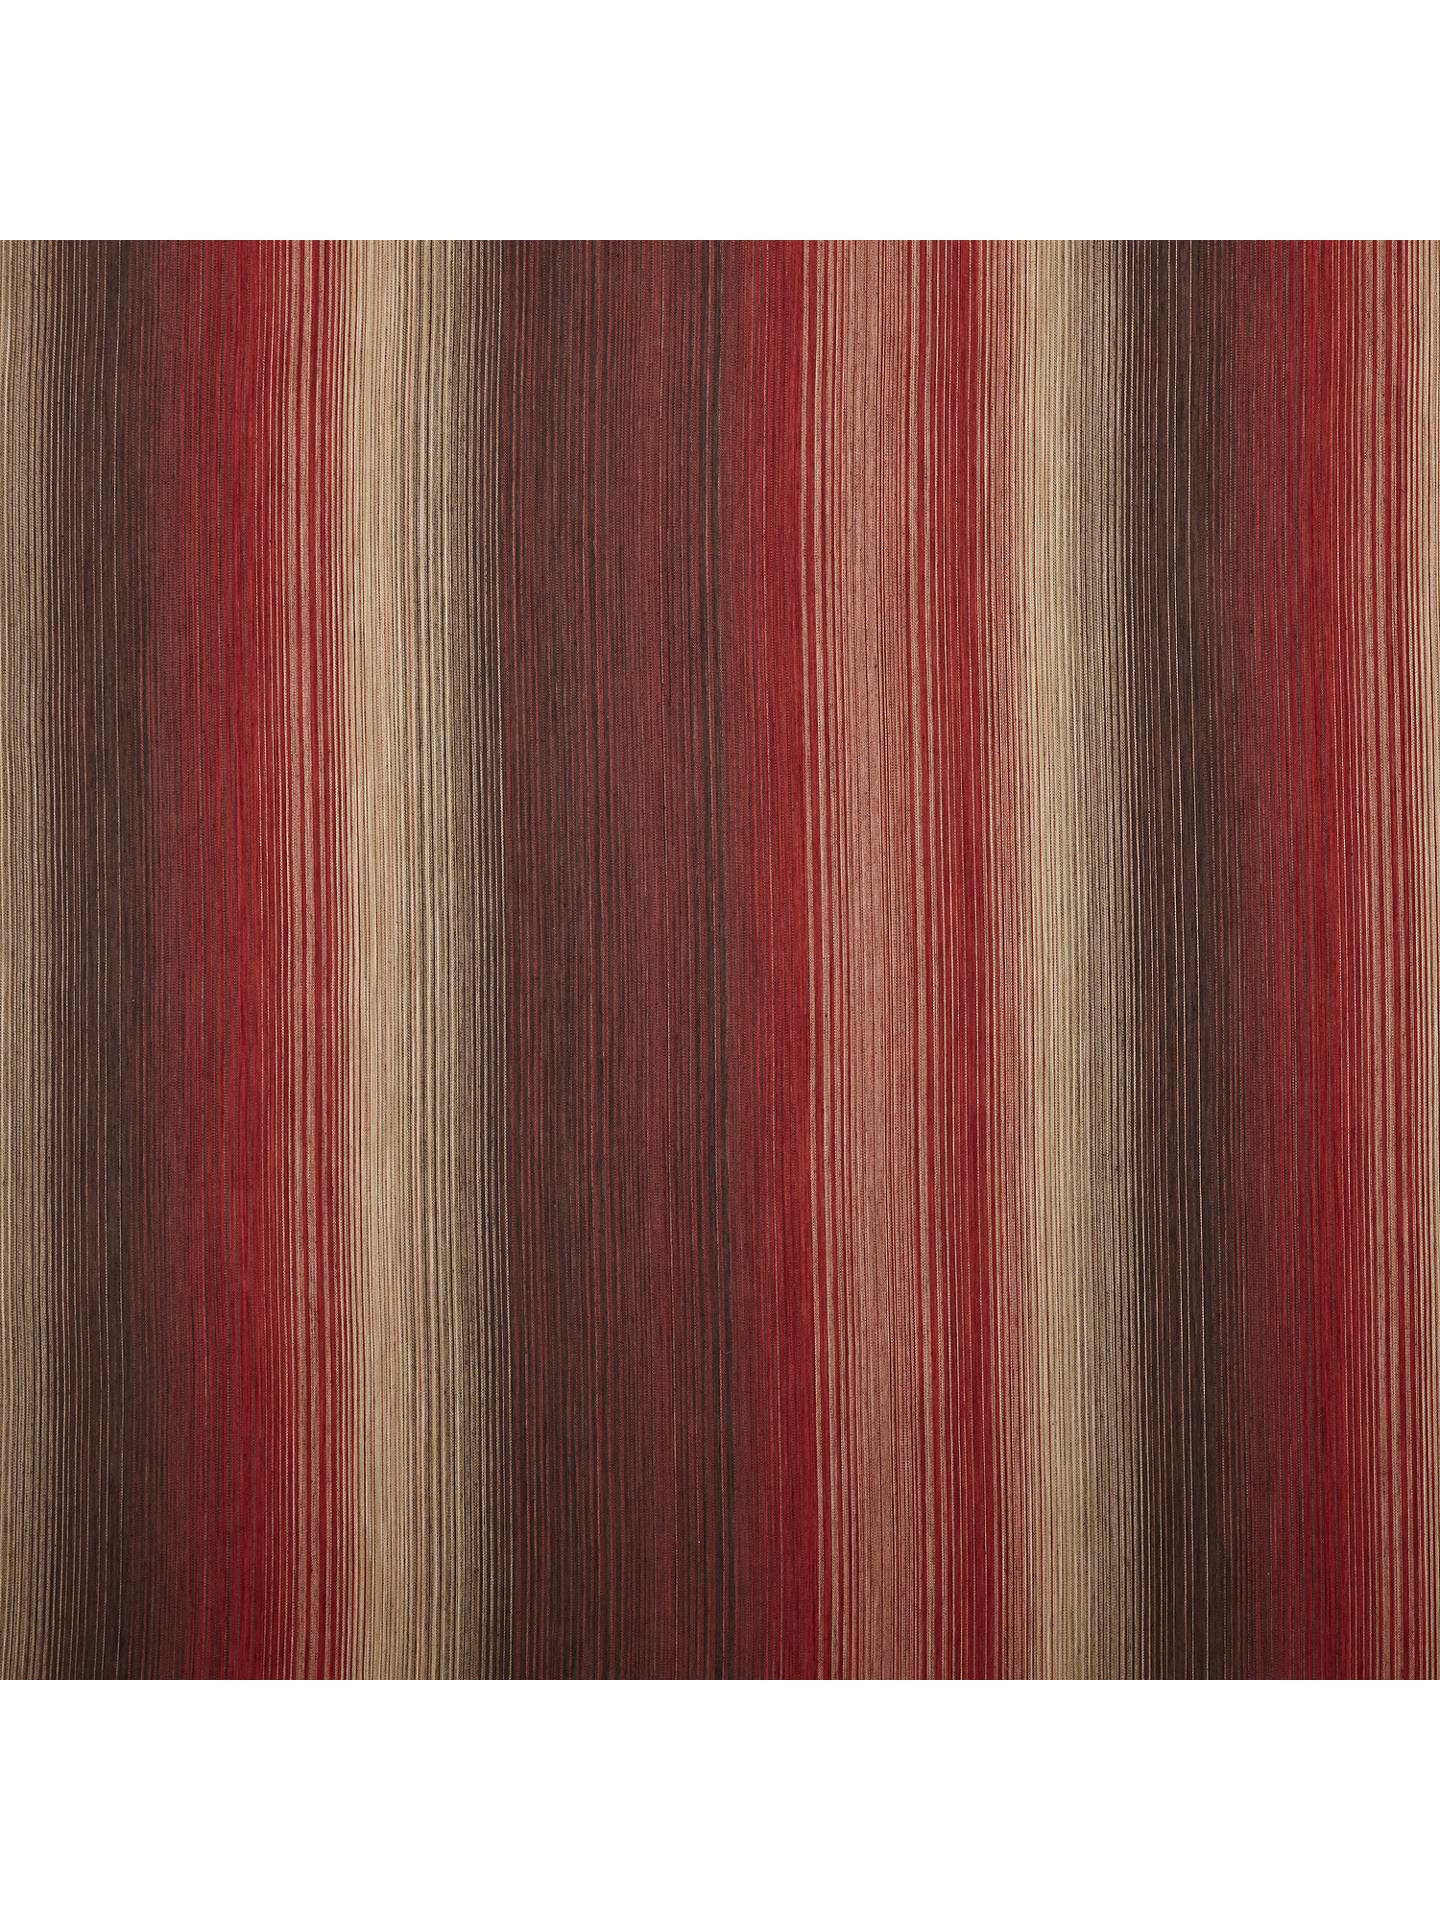 John Lewis Partners Horizon Stripe, Red Stripe Curtains Uk